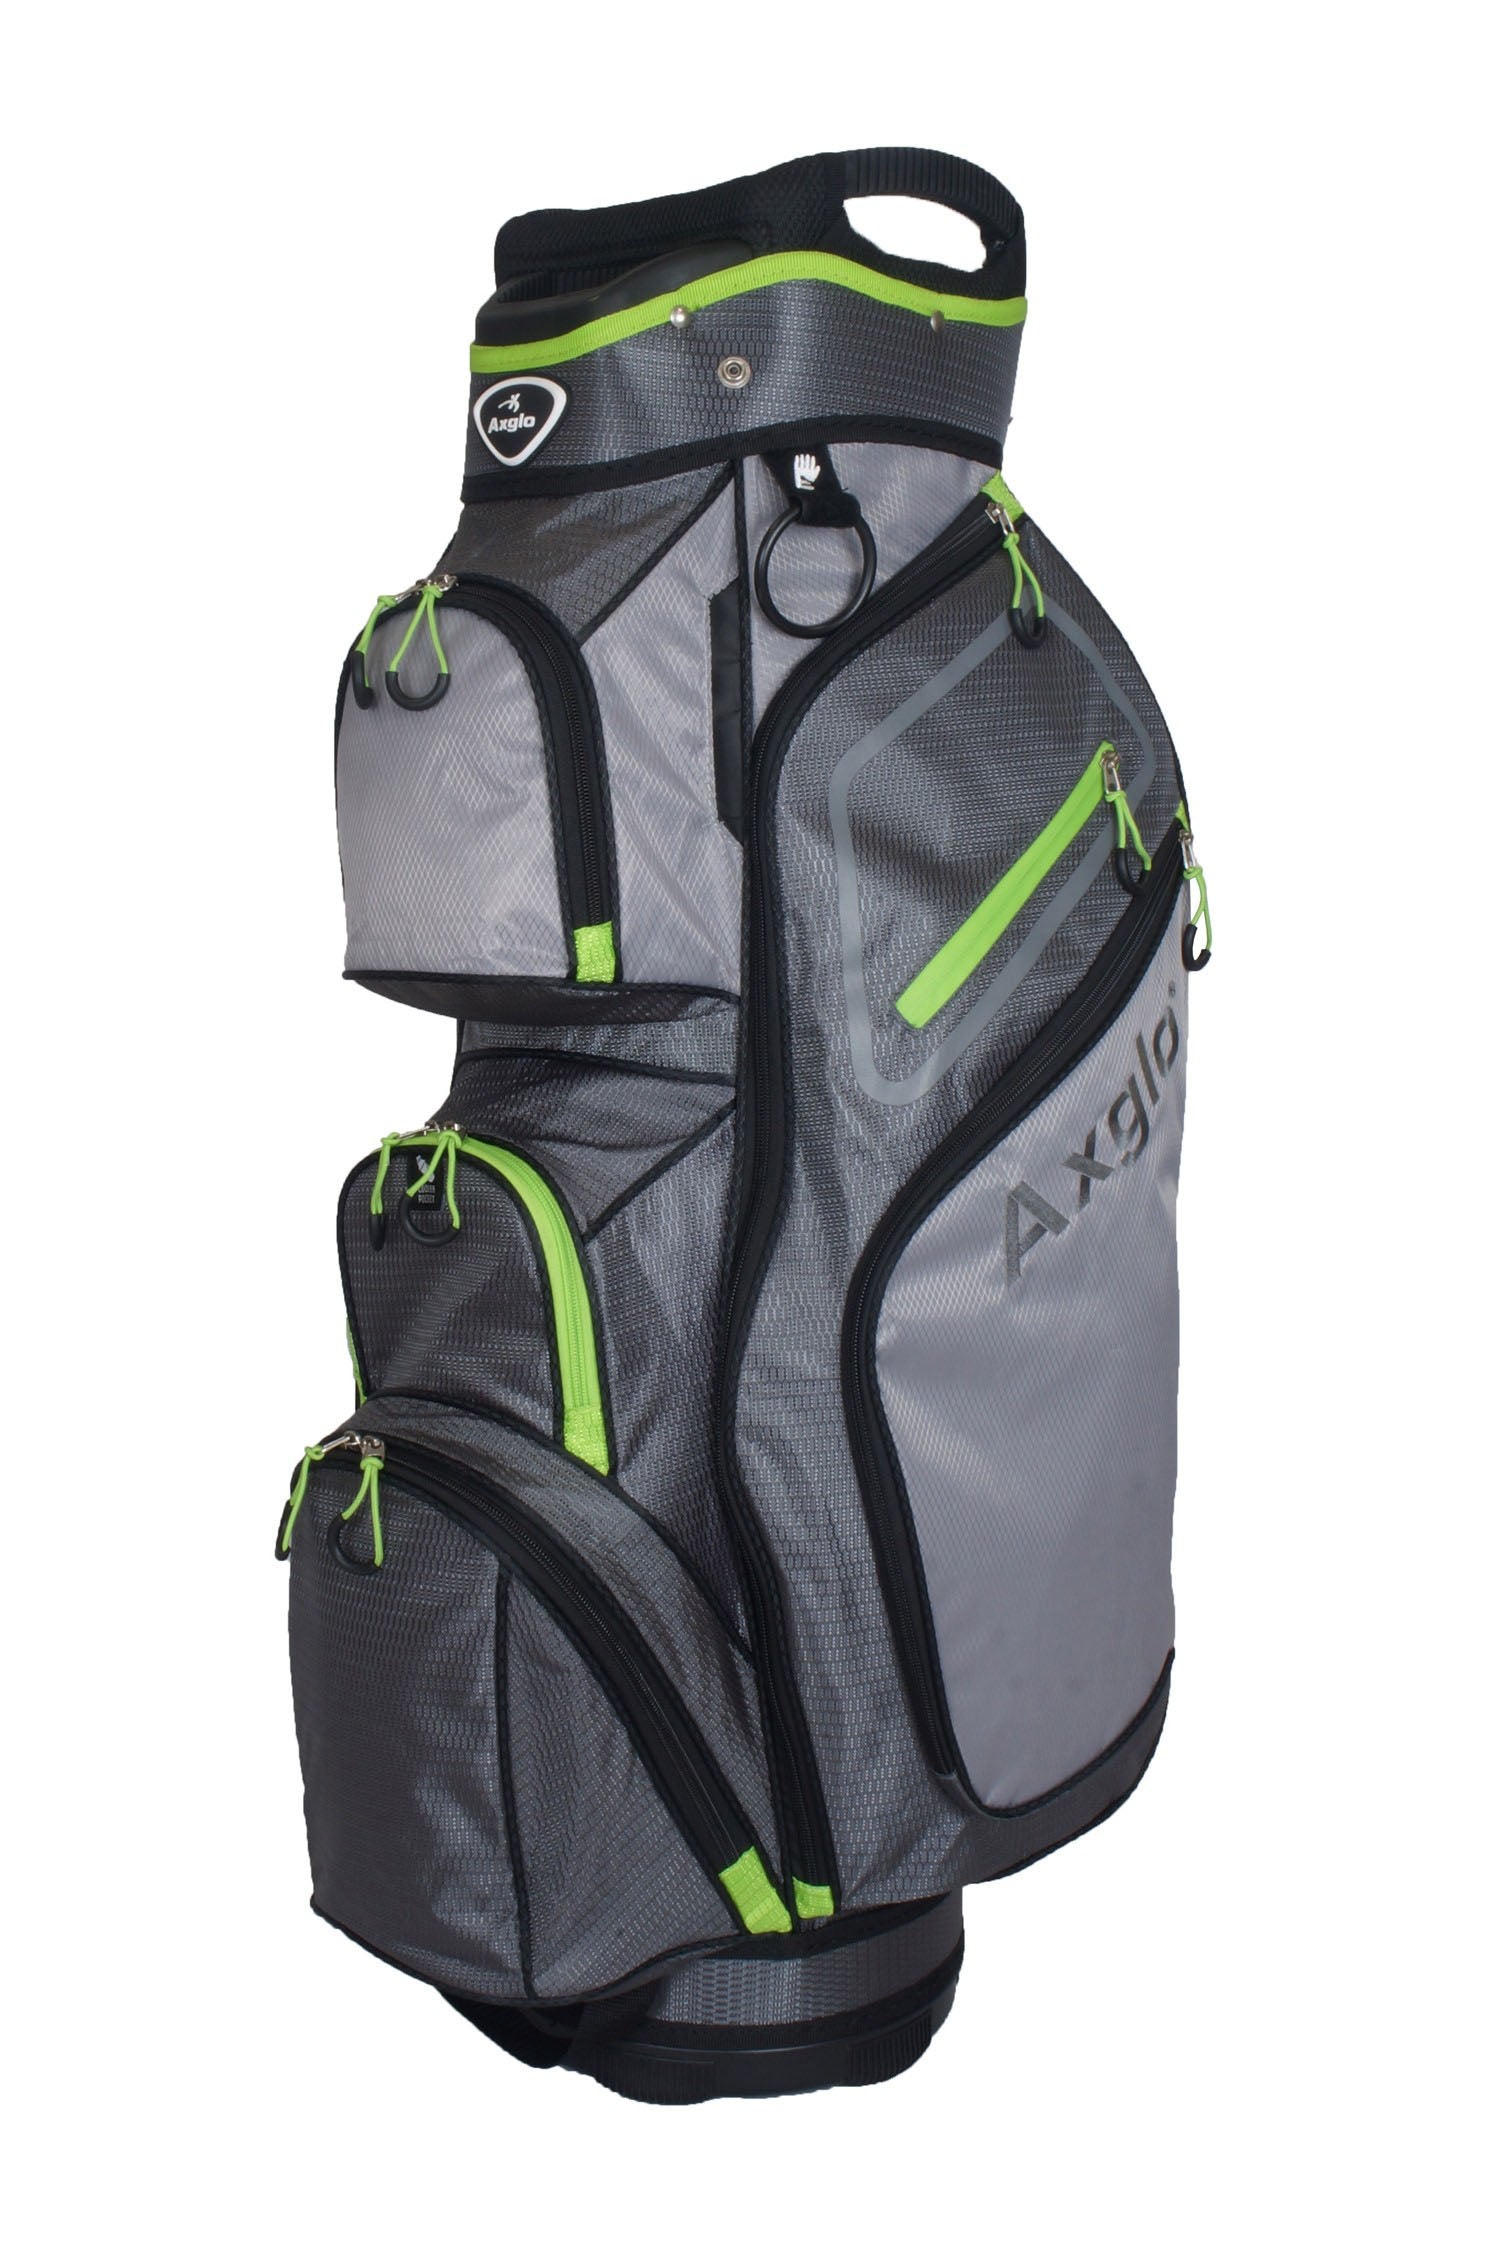 Axglo Golf Cart Bag - Green/Grey